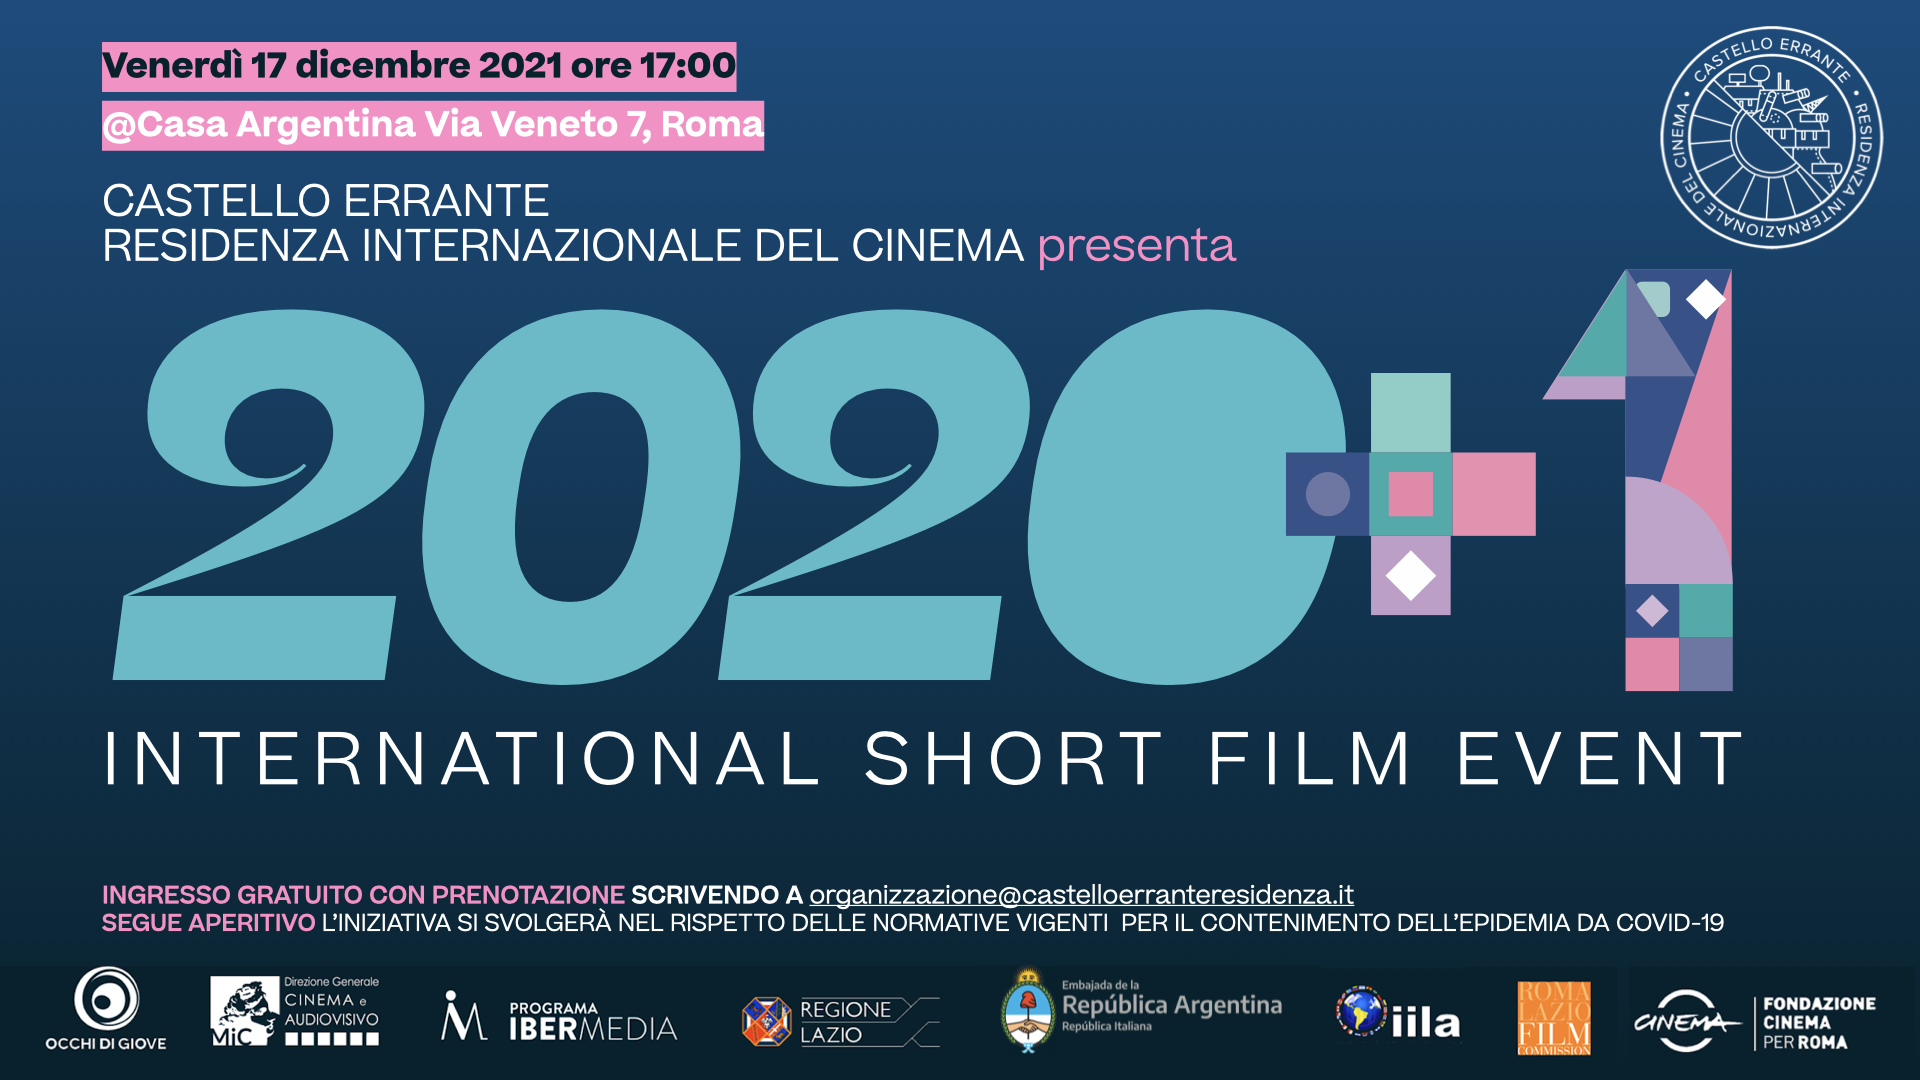 Castello Errante. Residenza Internazionale del Cinema  presenta  2020 + 1  International Short Film Event